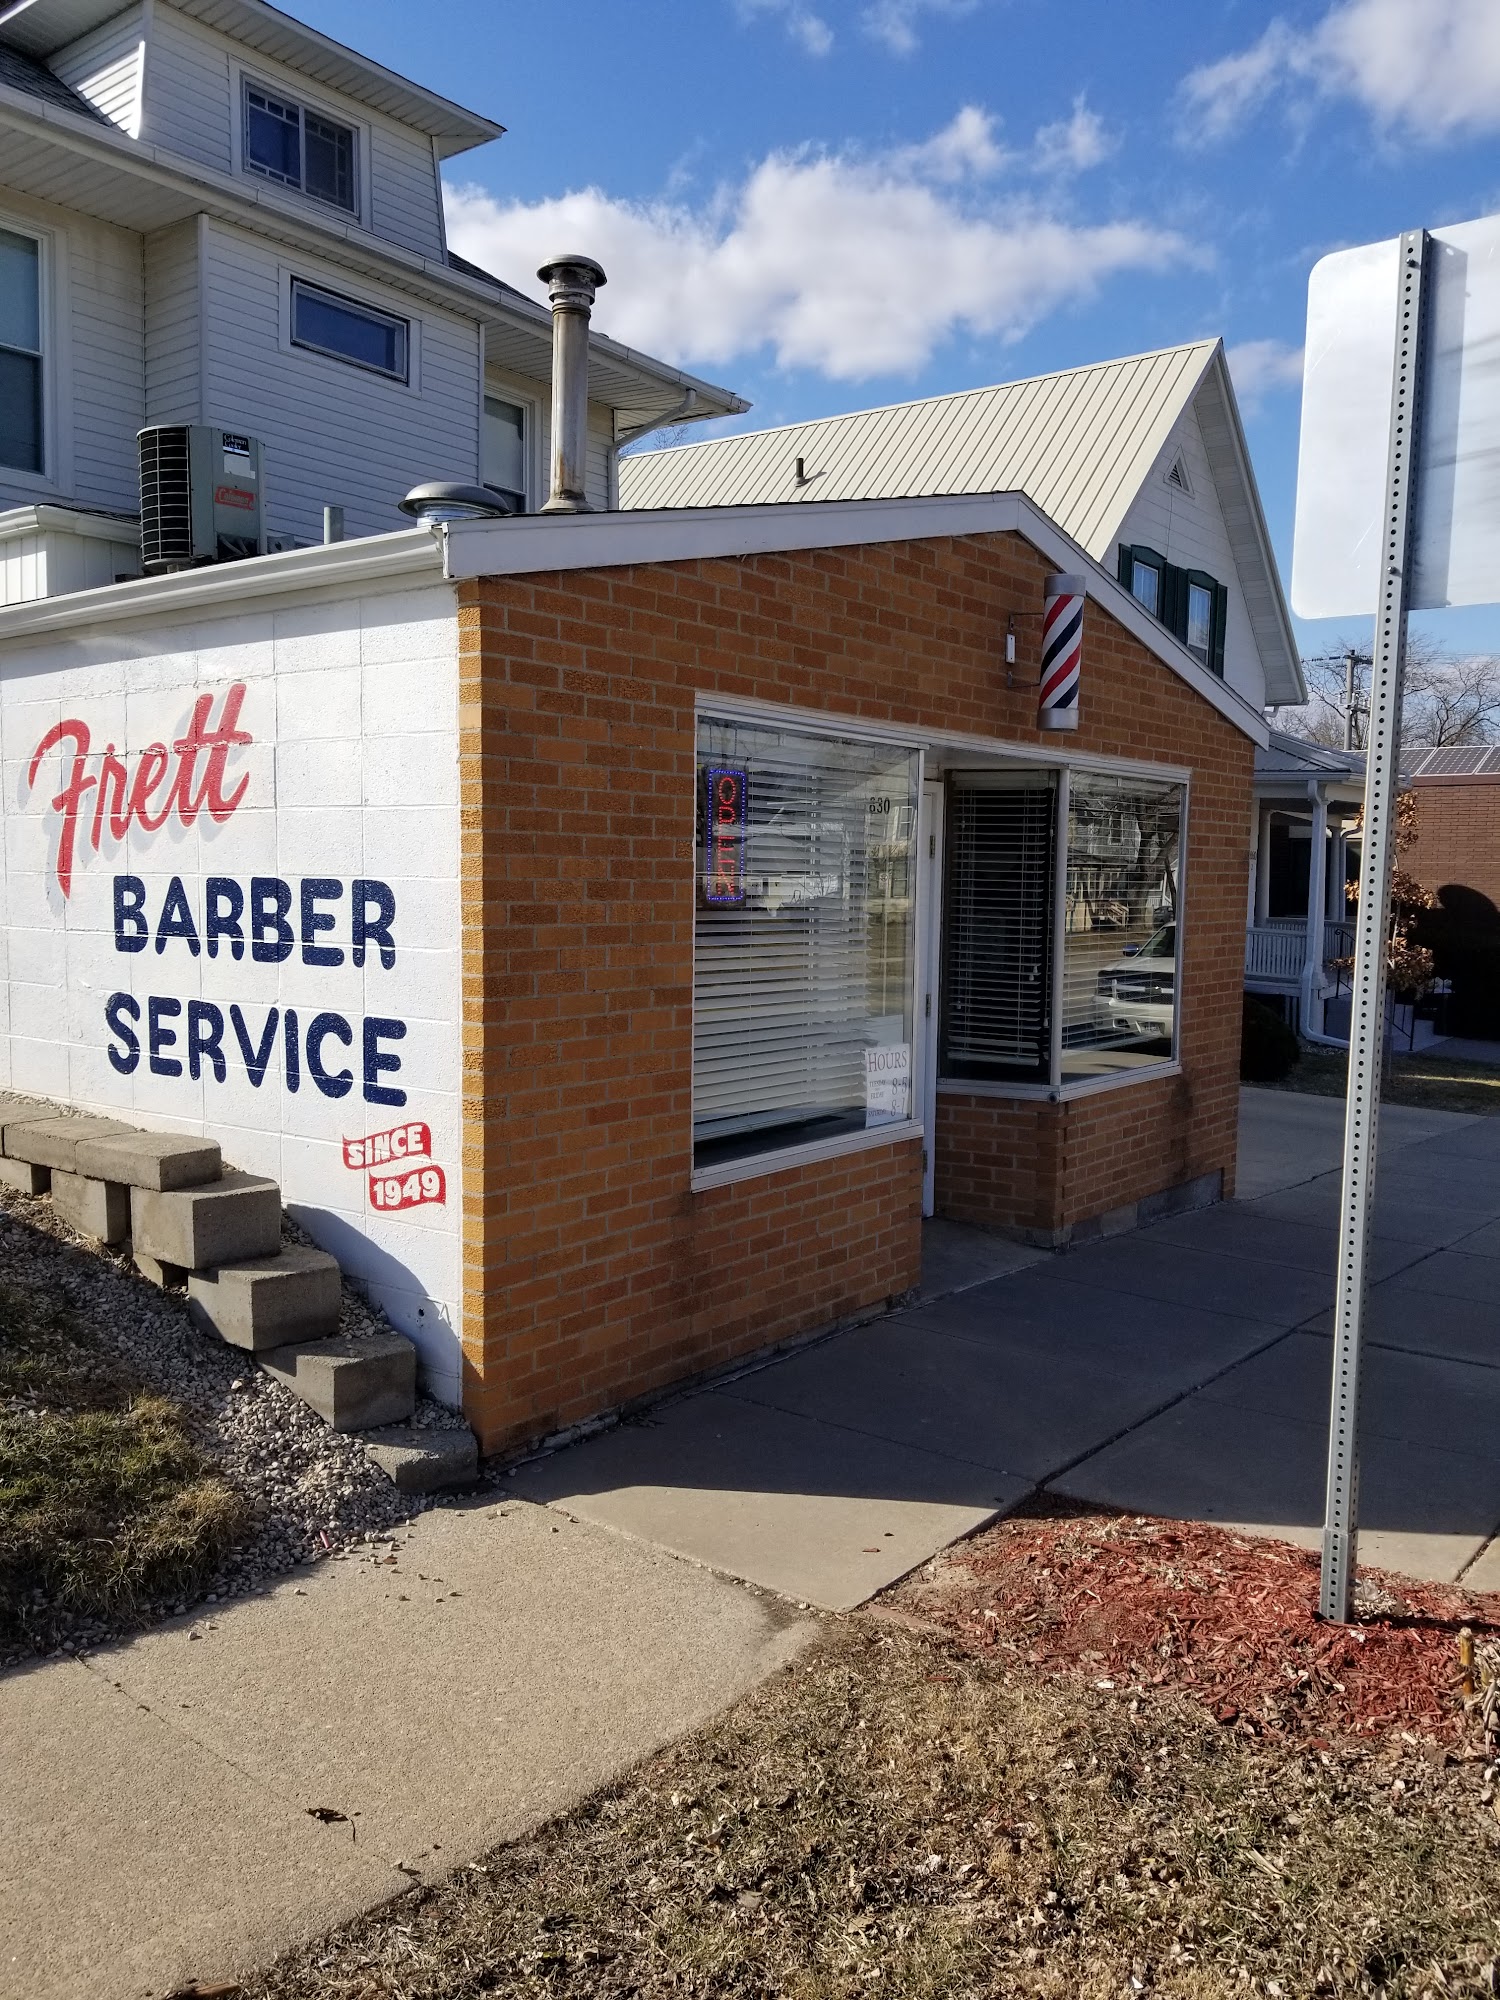 Frett Barber Services